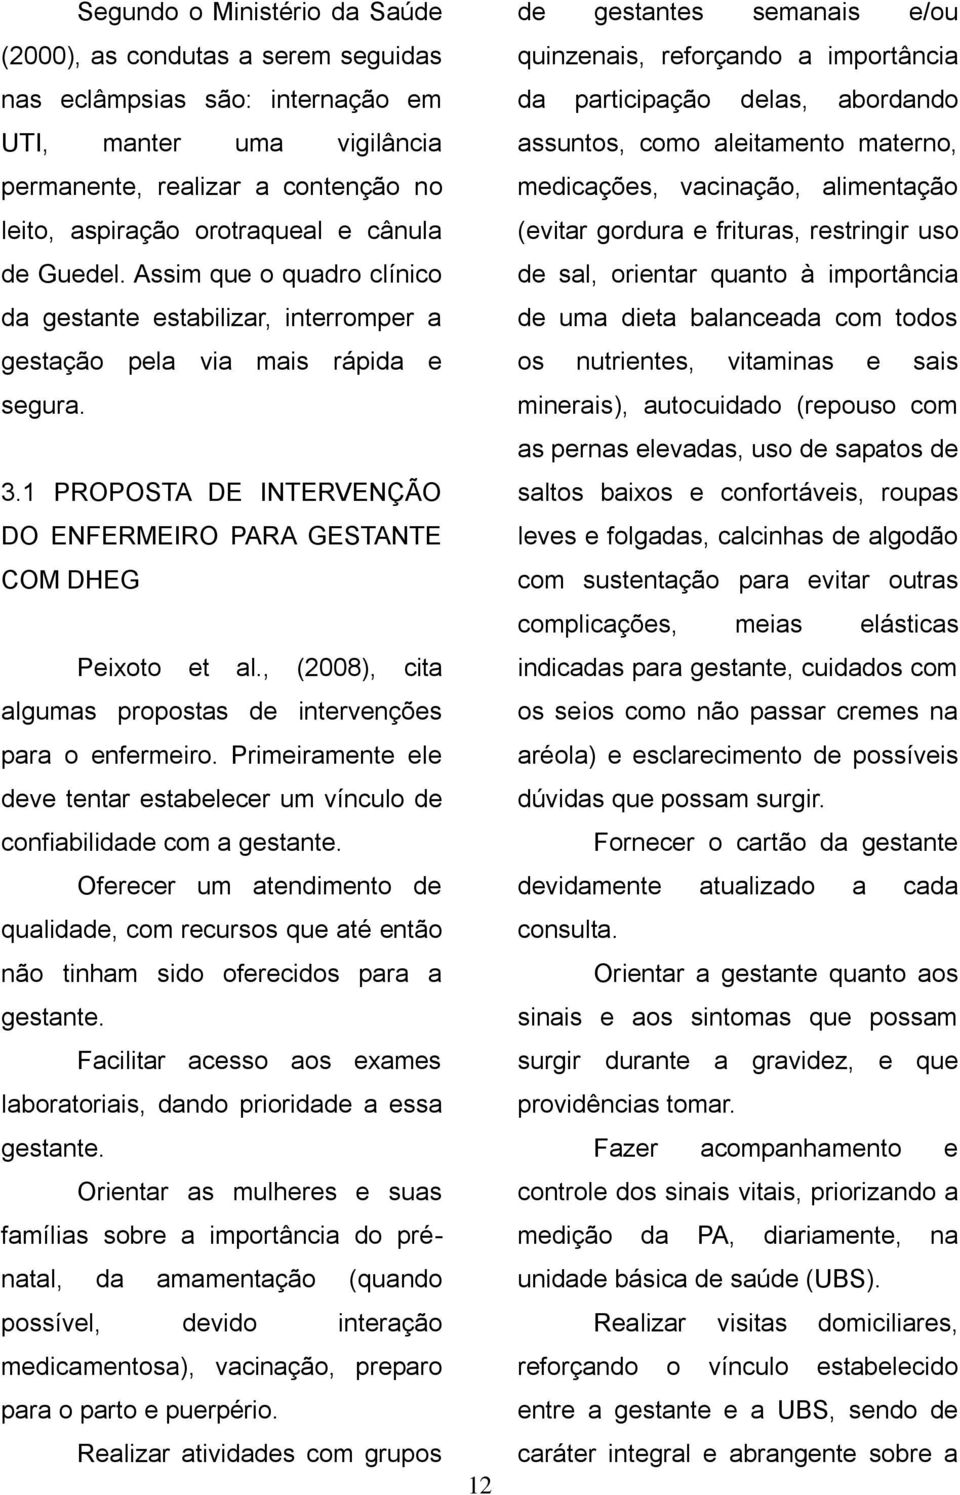 1 PROPOSTA DE INTERVENÇÃO DO ENFERMEIRO PARA GESTANTE COM DHEG Peixoto et al., (2008), cita algumas propostas de intervenções para o enfermeiro.